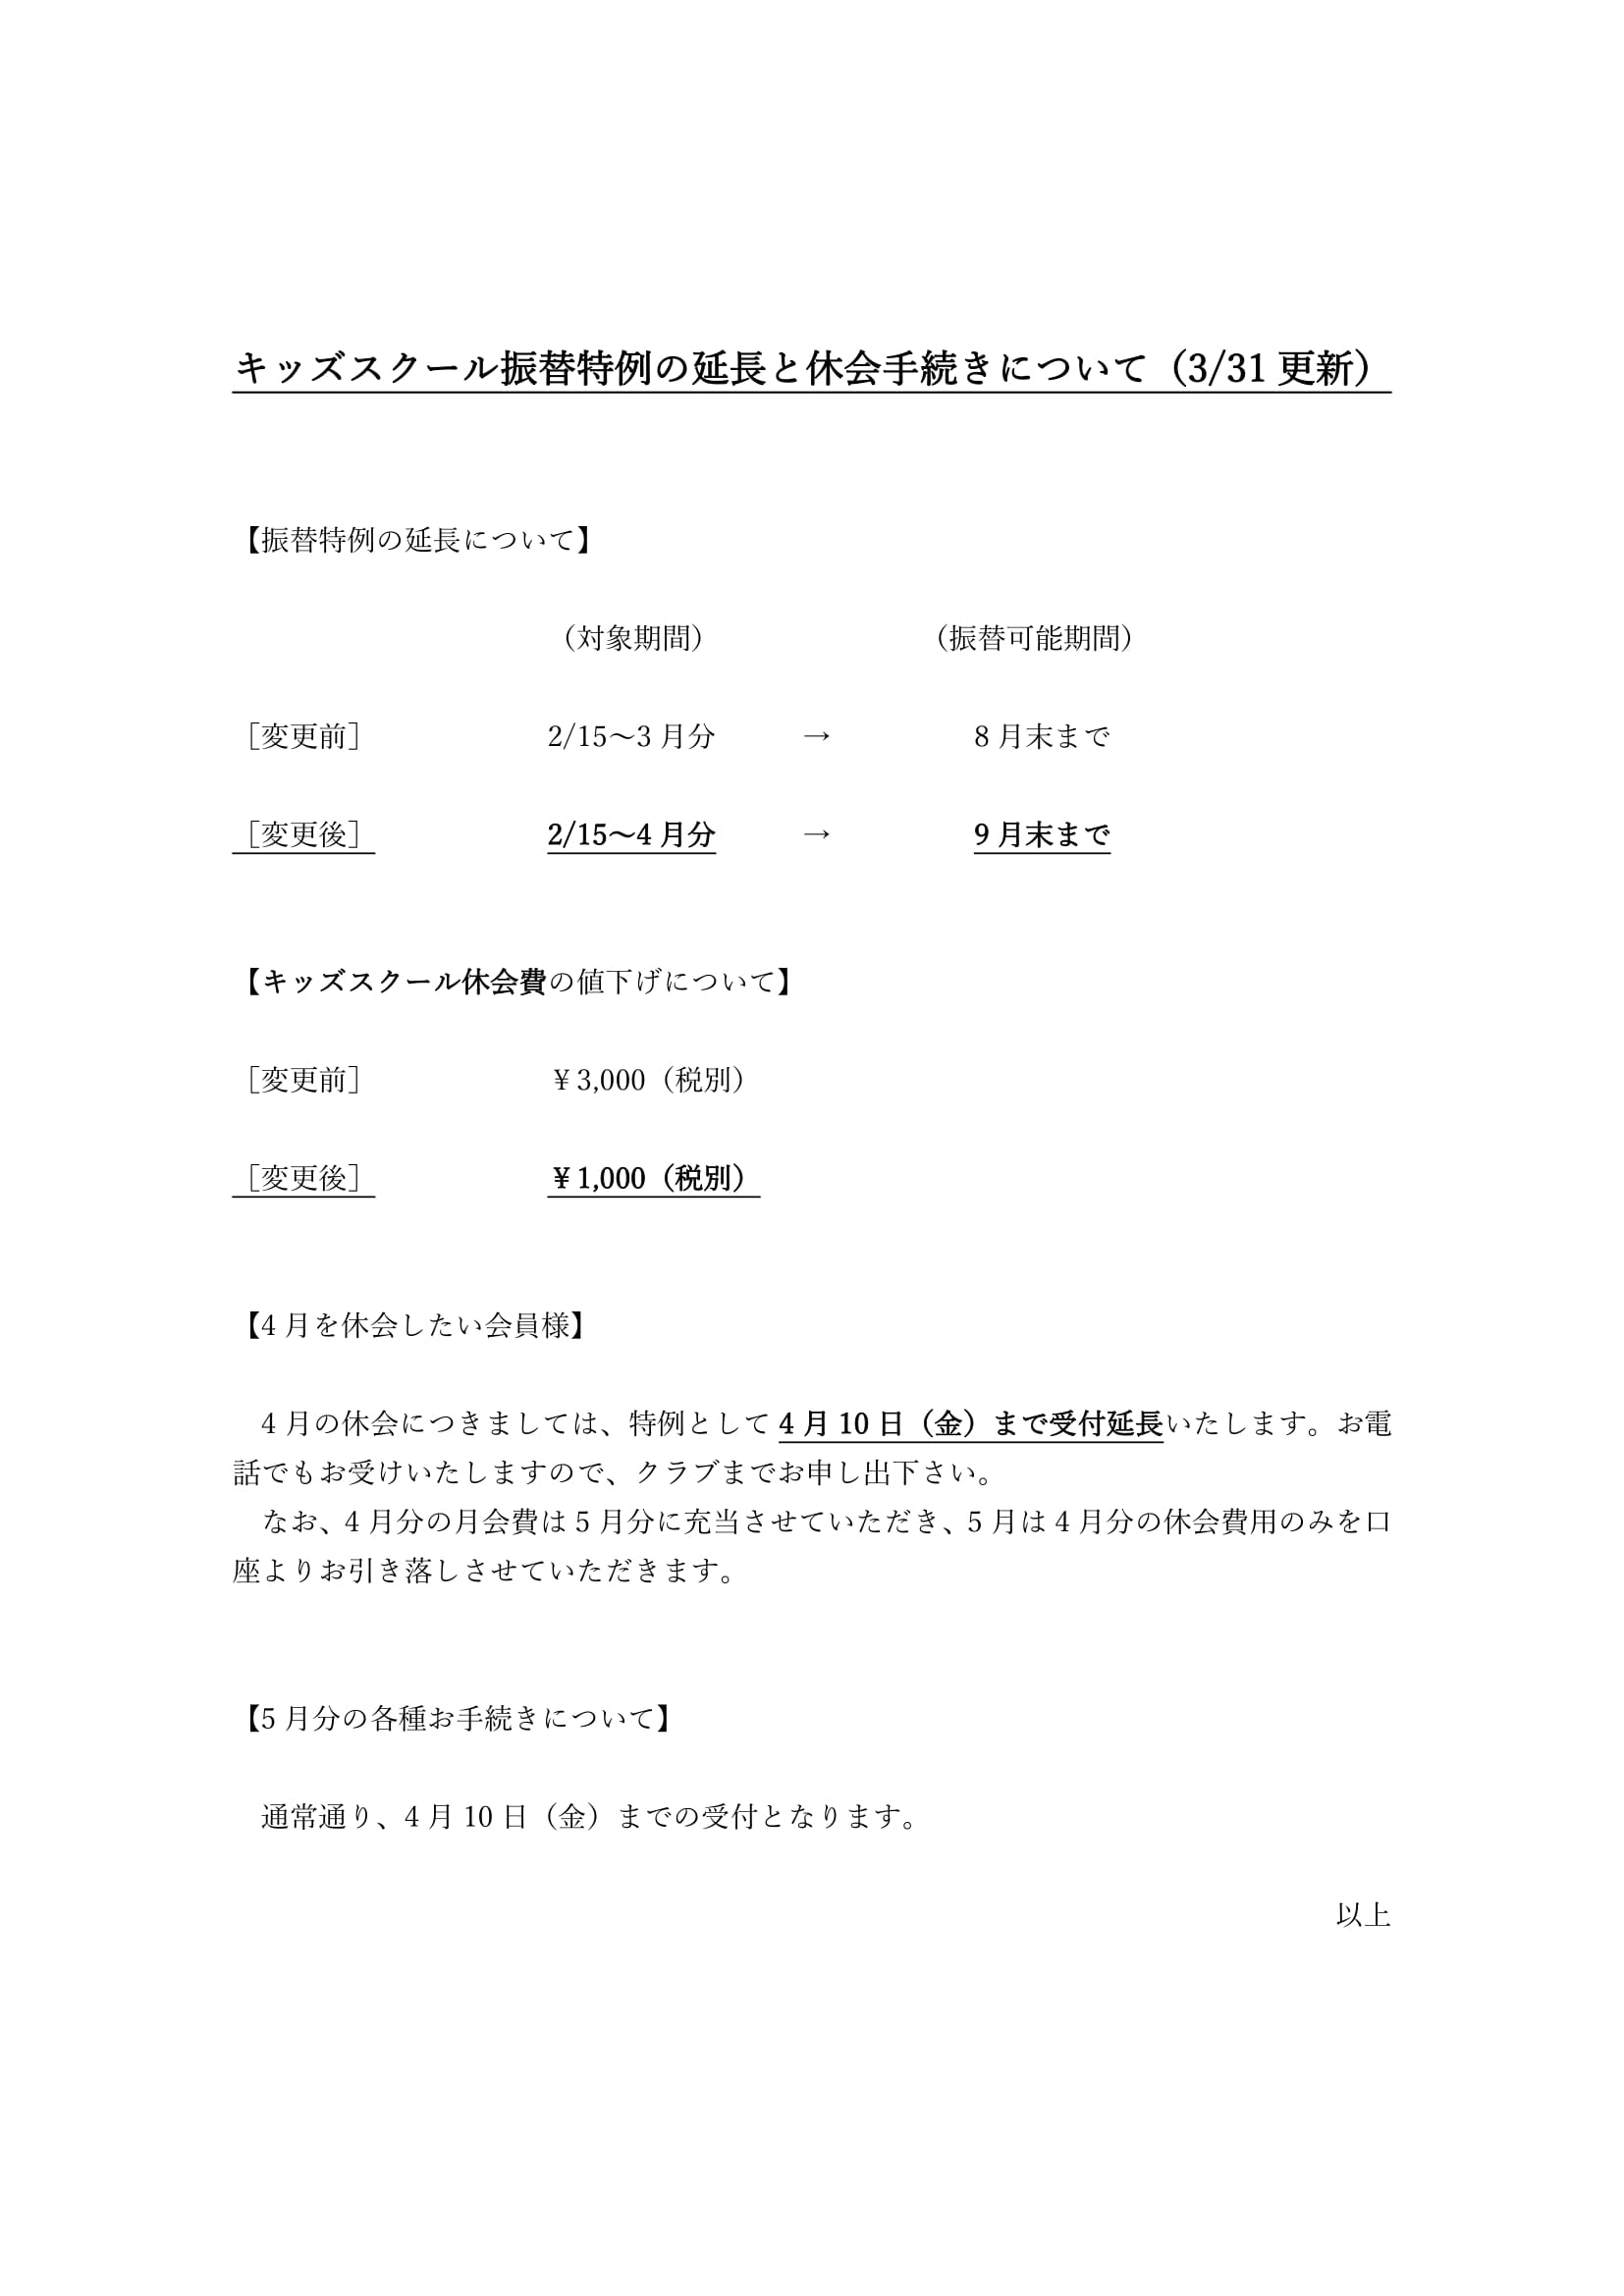 江北 振替特例の延長と4月休会手続きについて(3/31更新)